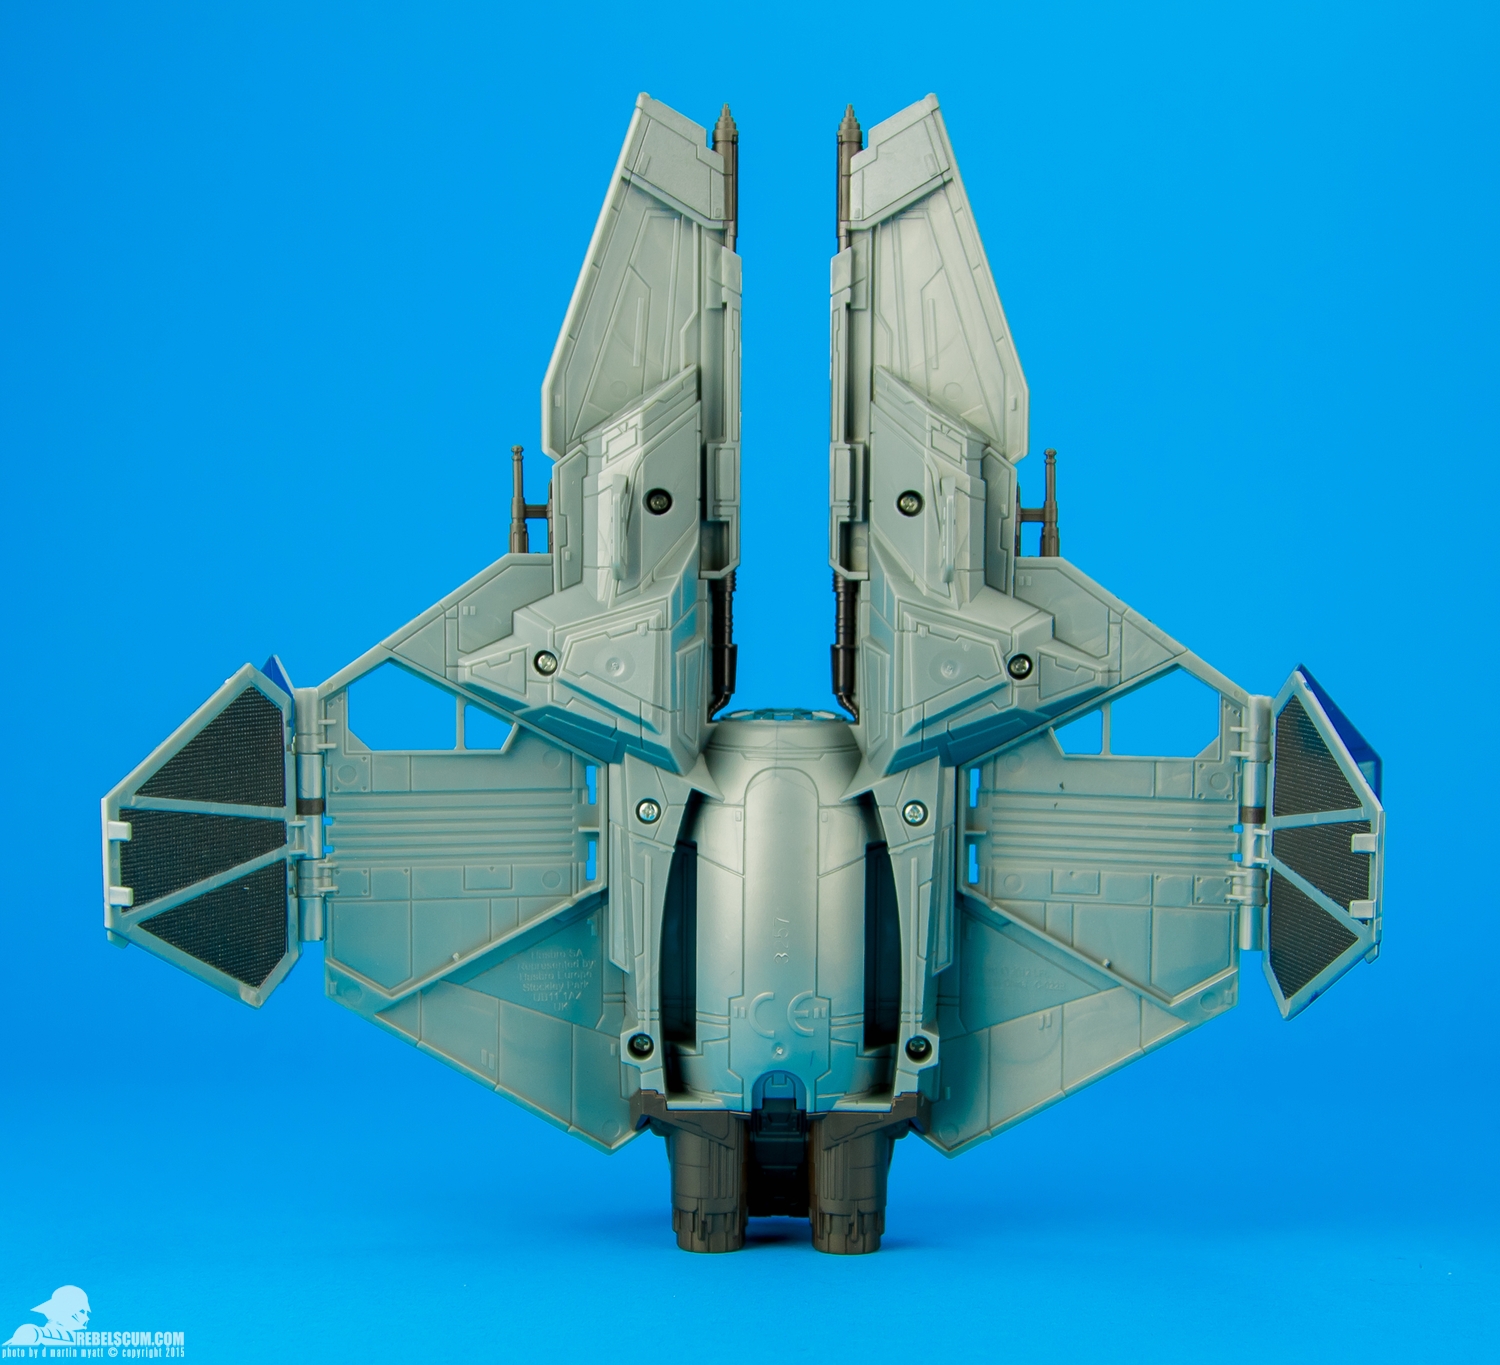 Obi-Wan-Jedi-Starfighter-2014-Saga-Legends-Class-II-012.jpg